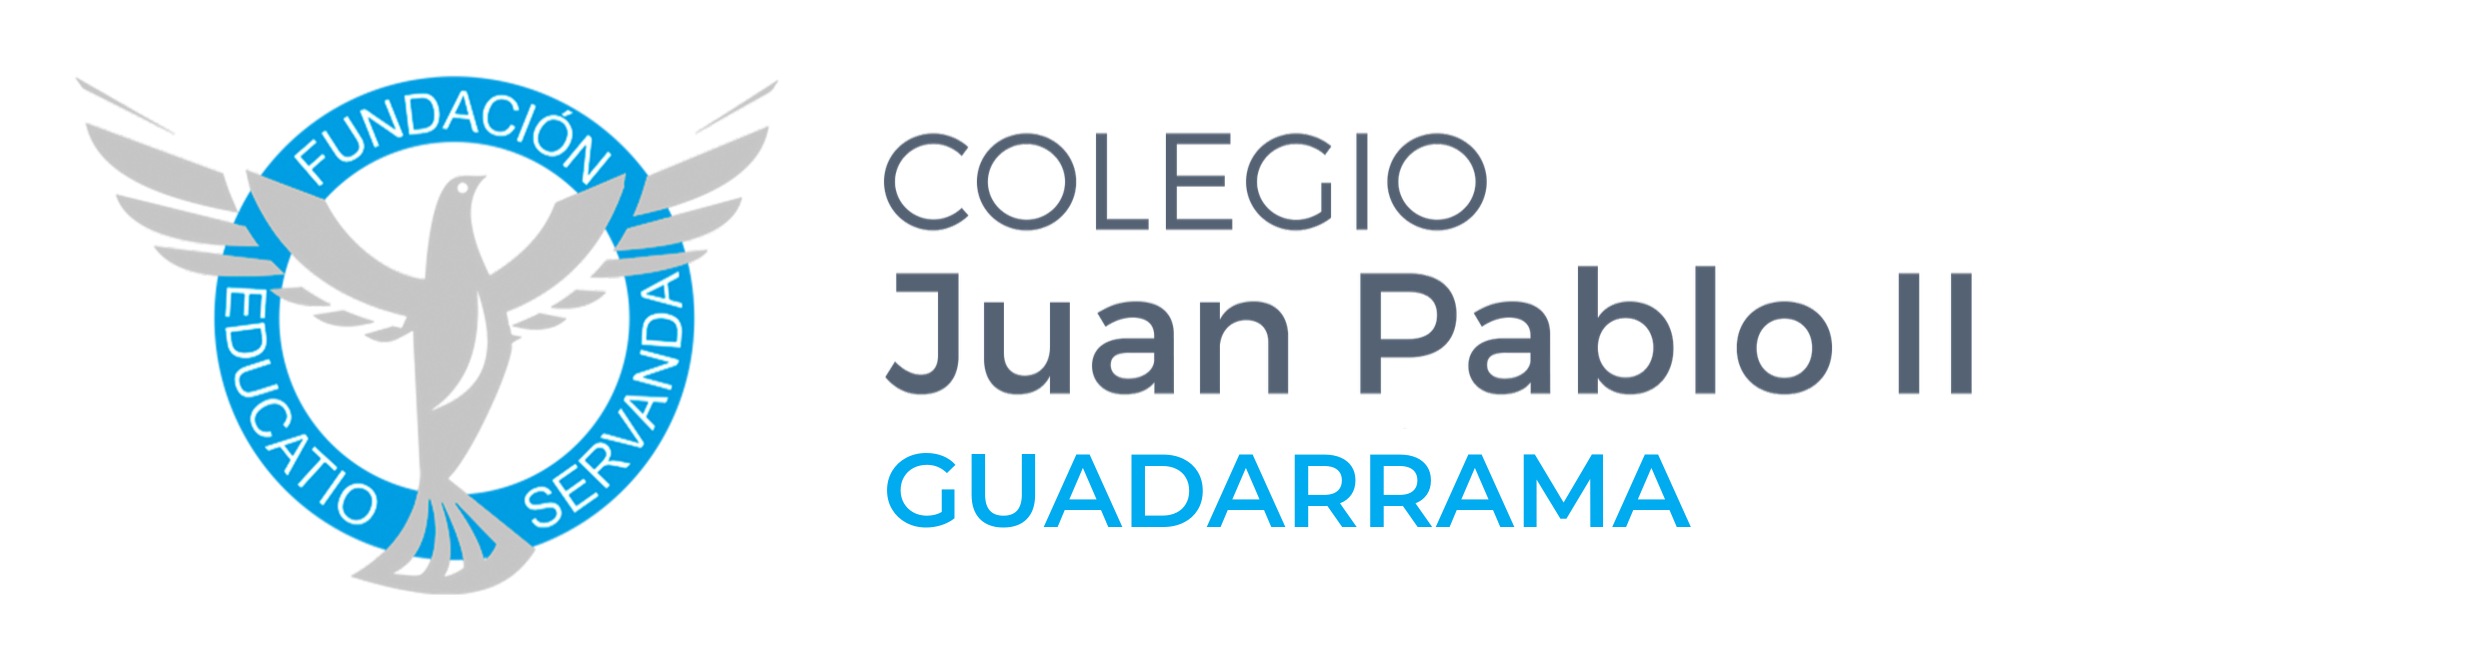 Colegio Juan Pablo II – Guadarrama Logo